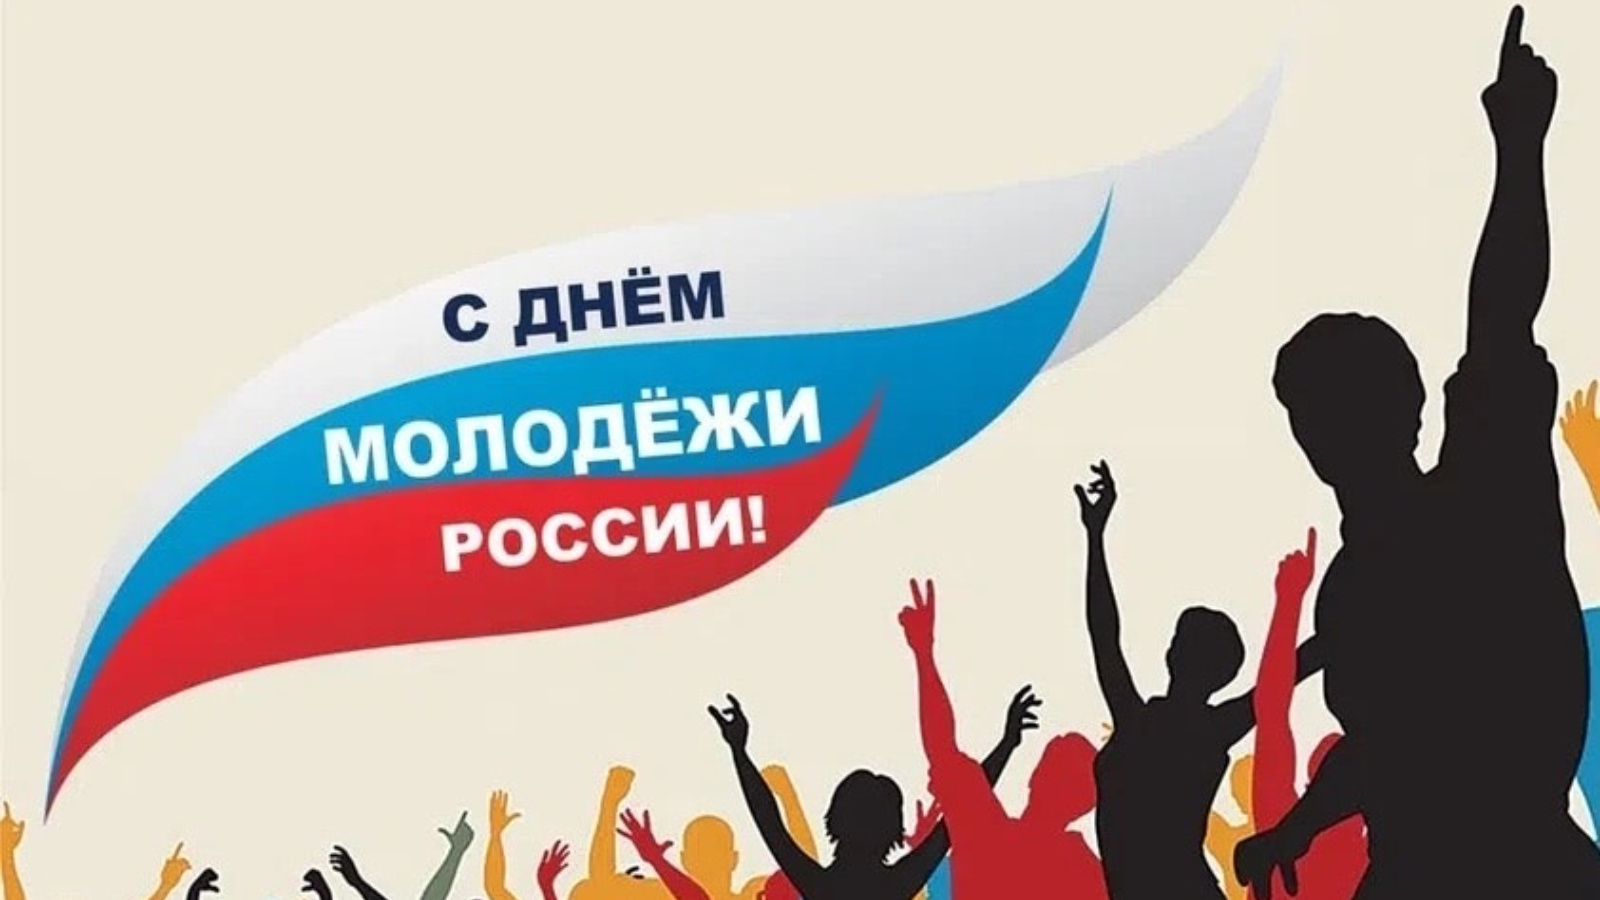 24 27 июня. С днем молодежи. 27 Июня день молодежи. День молодёжи (Россия). С днём молодёжи картинки.